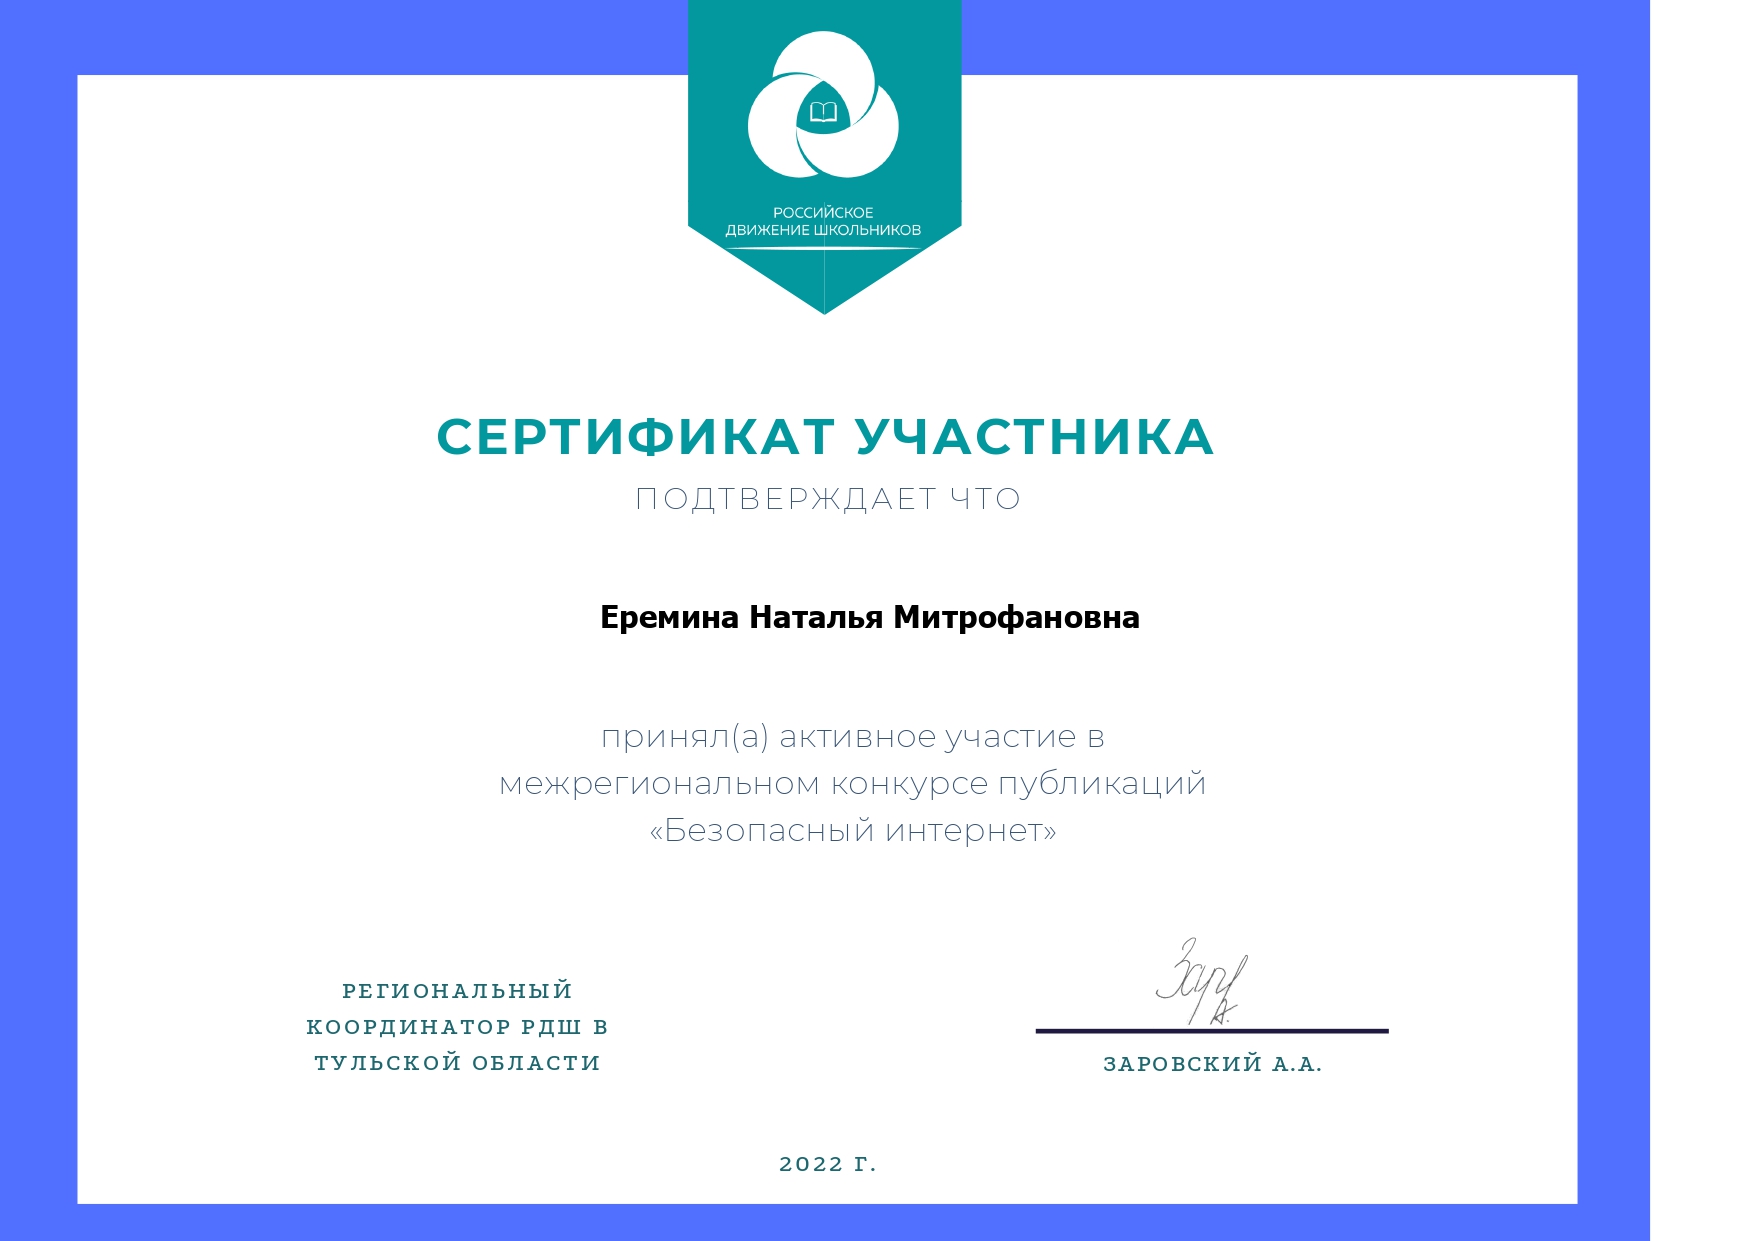 Сертификат за активное участие в межрегиональном конкурсе публикаций «Безопасный интернет»